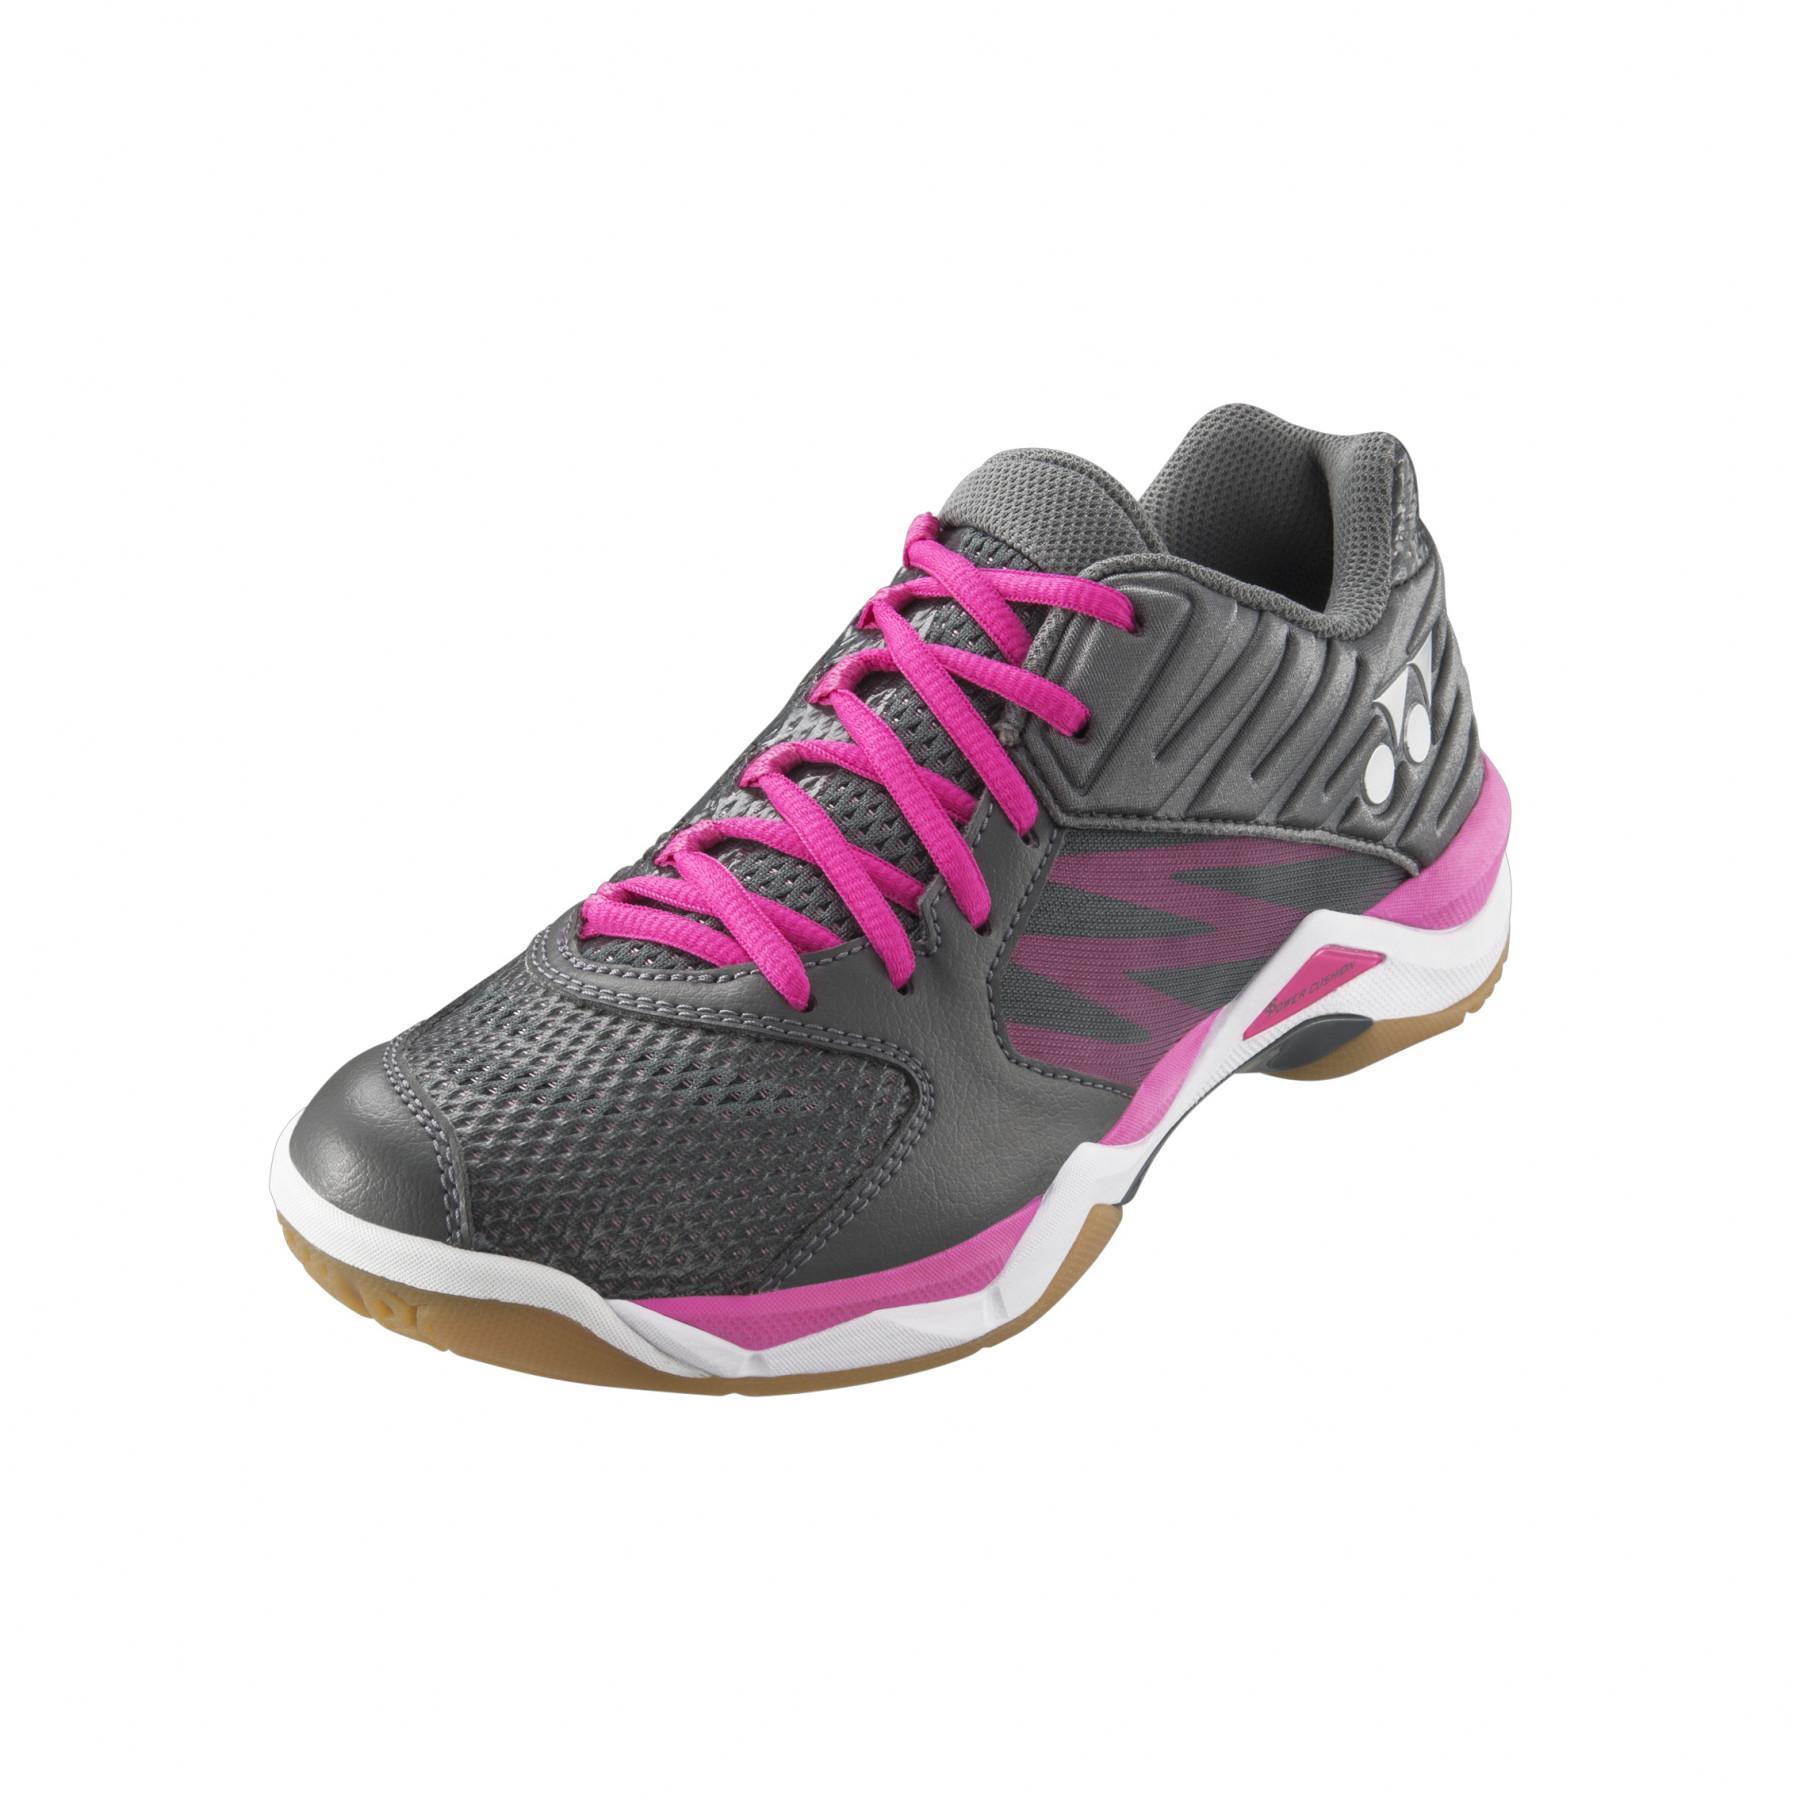 Indoor shoes for women Yonex pc-comfort z